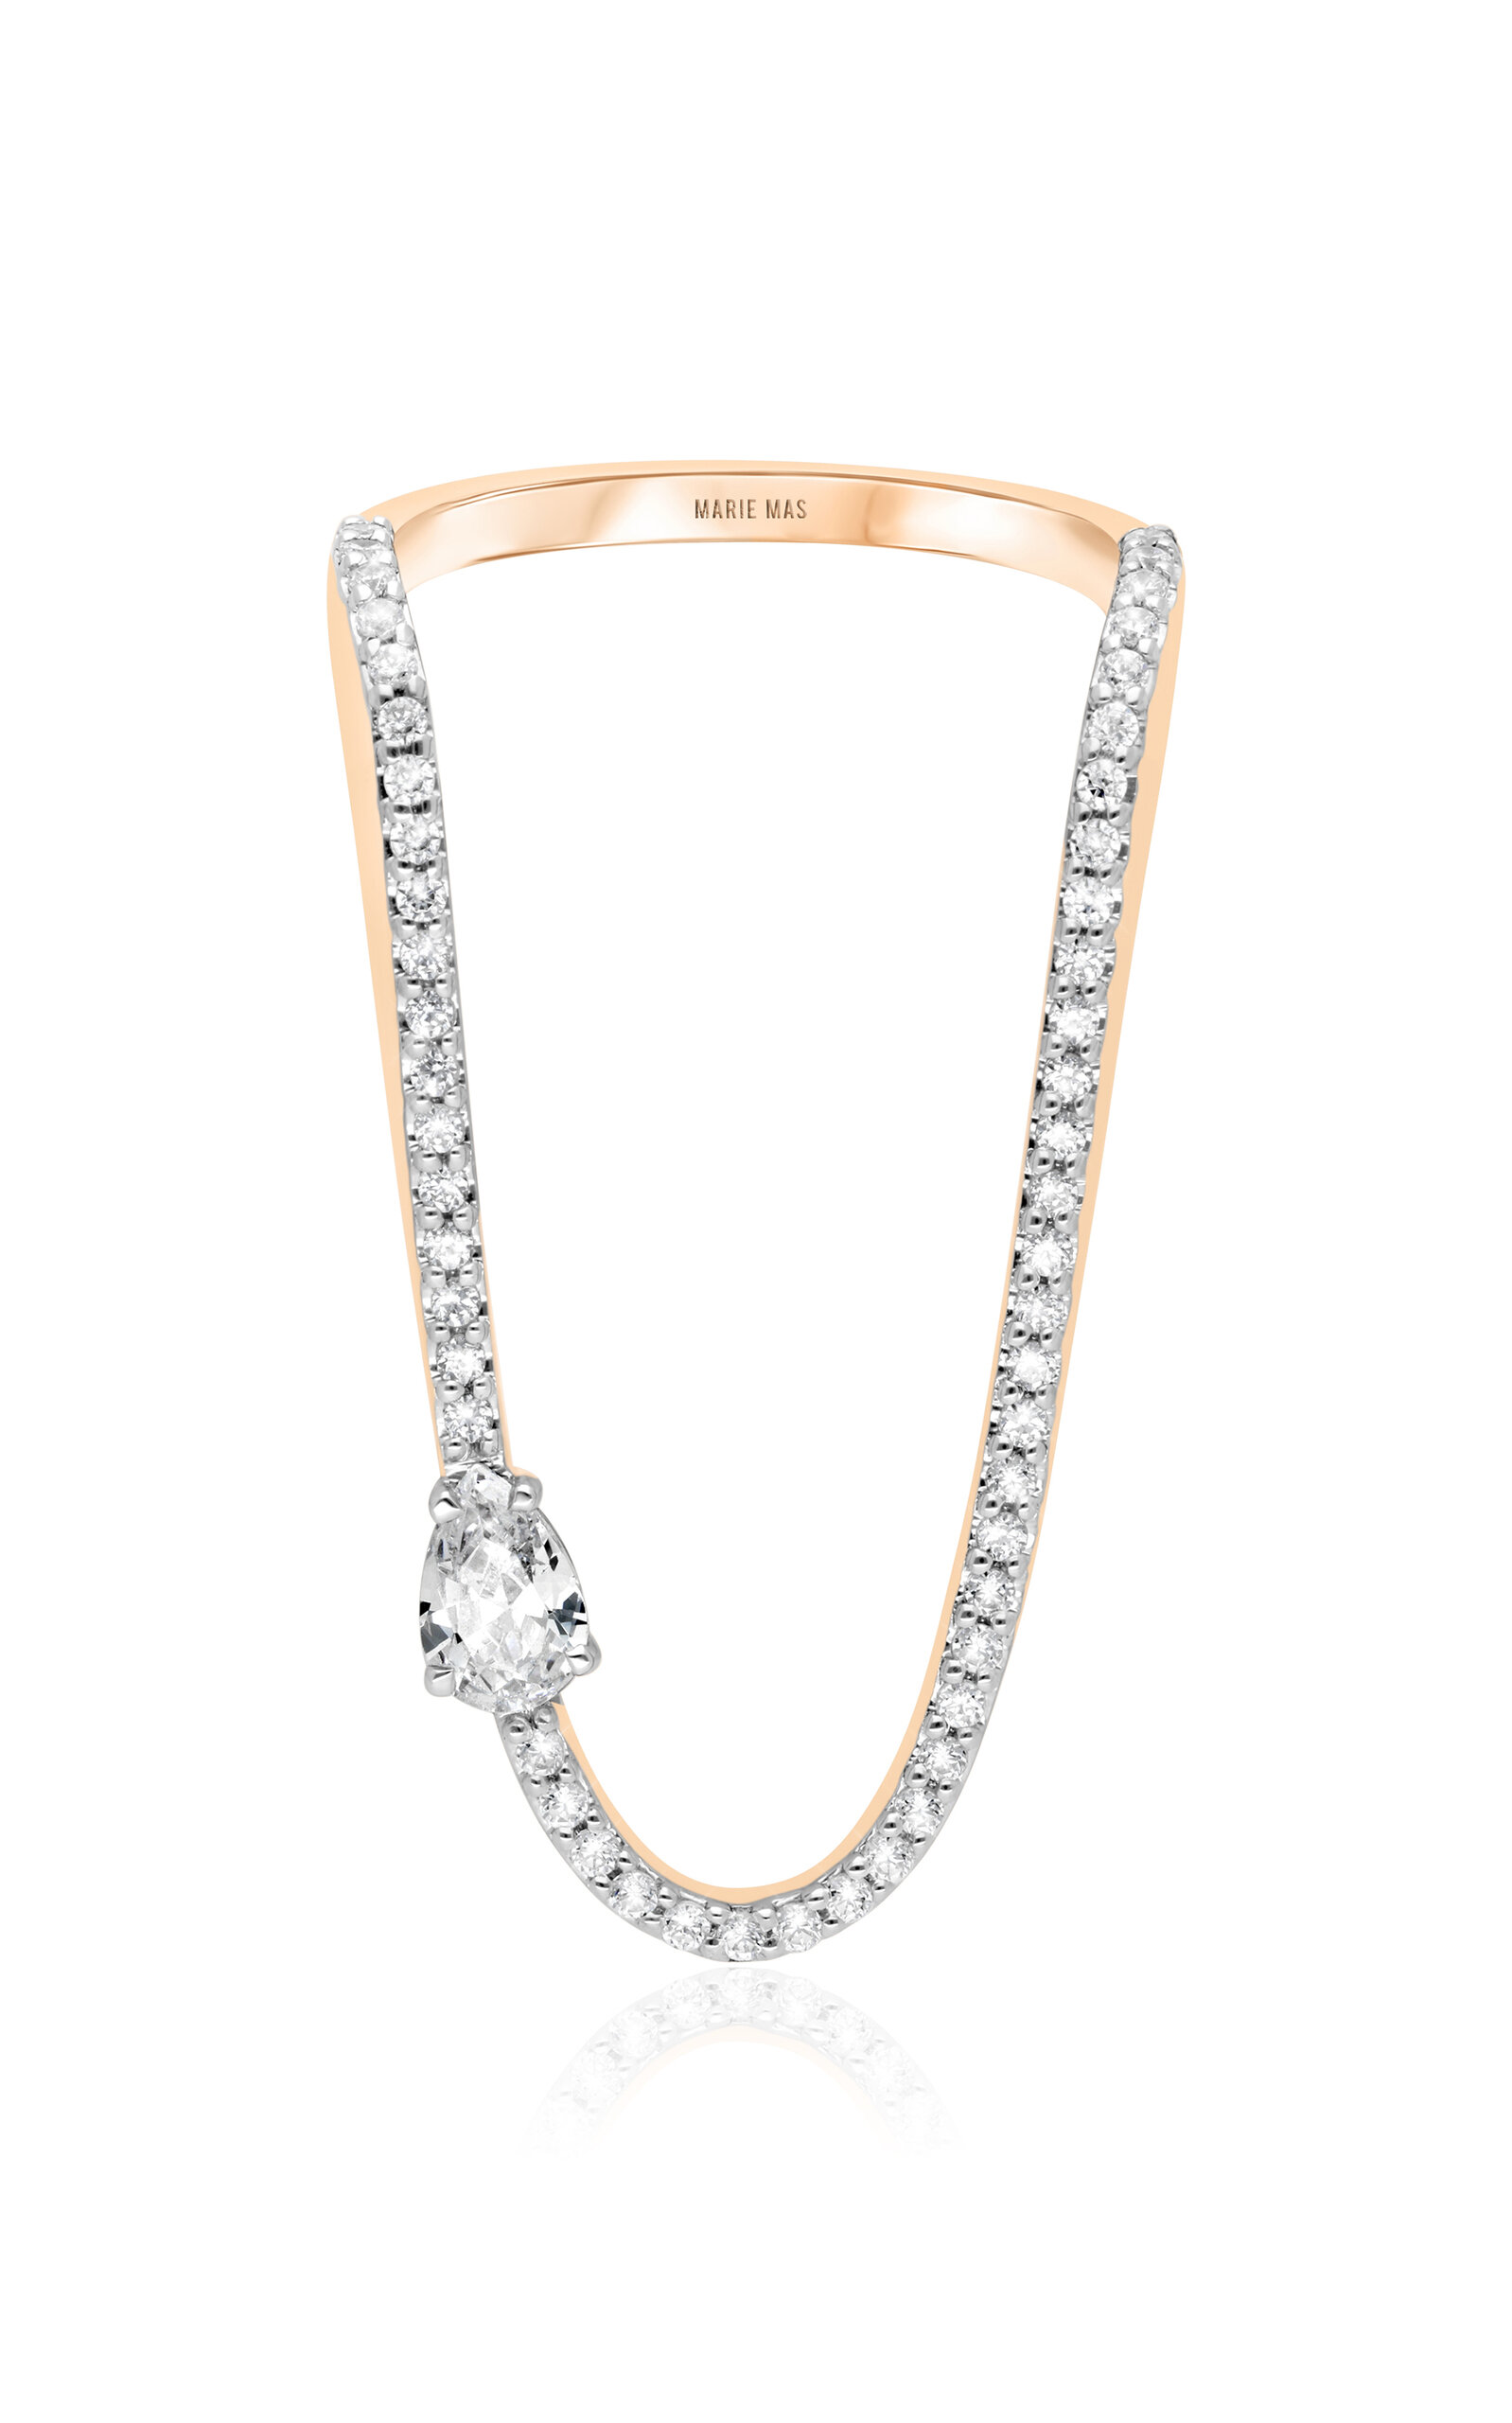 Marie Mas Aurora 18k Rose Gold Diamond Ring In Pink